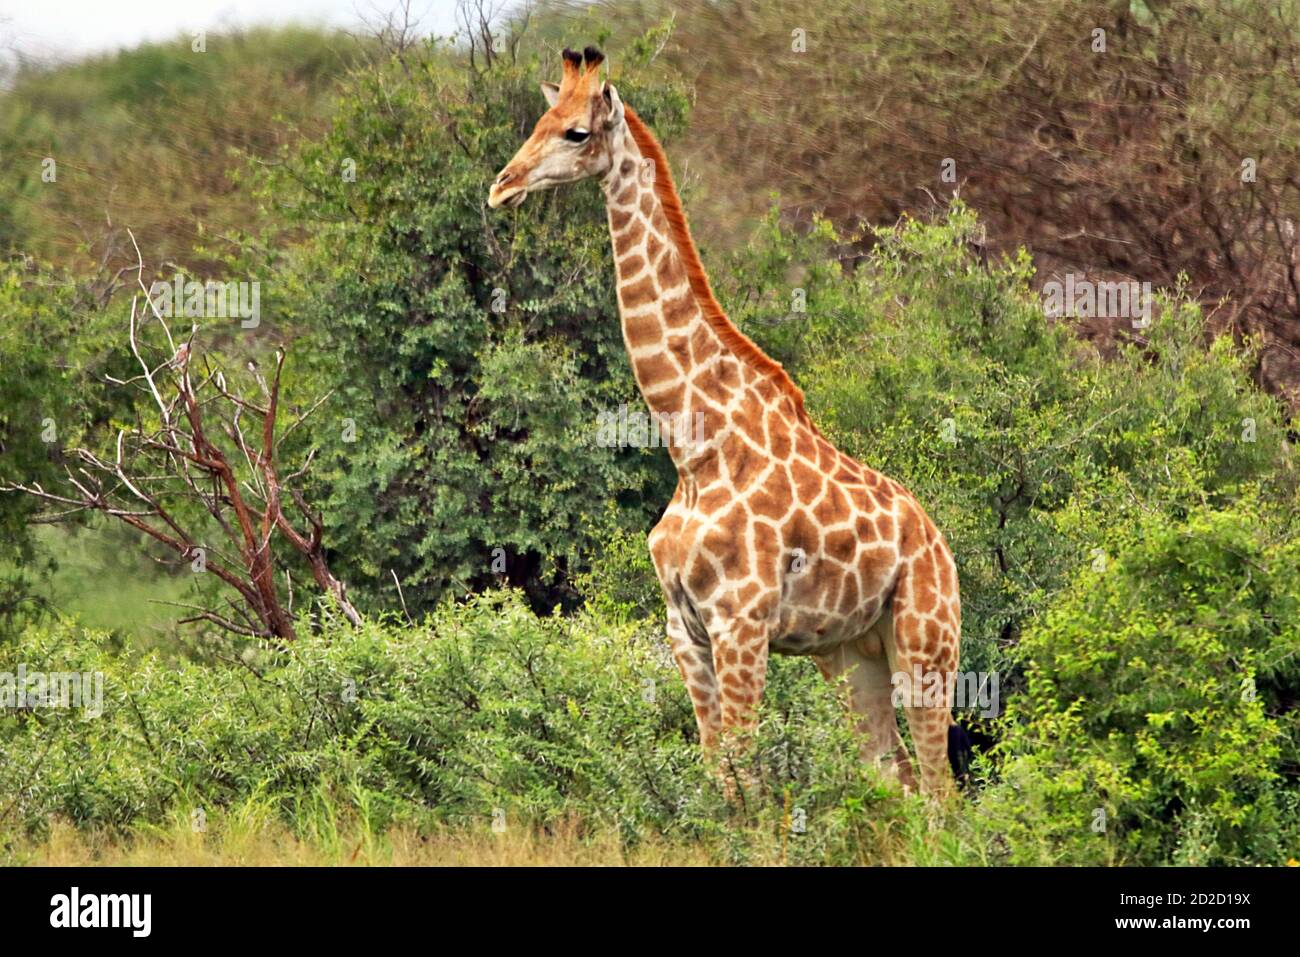 Une jeune girafe sud-africaine (Giraffa camelopardalis giraffa) dans la végétation pendant la saison humide à la réserve d'Erindi, région d'Erongo, Namibie. Banque D'Images